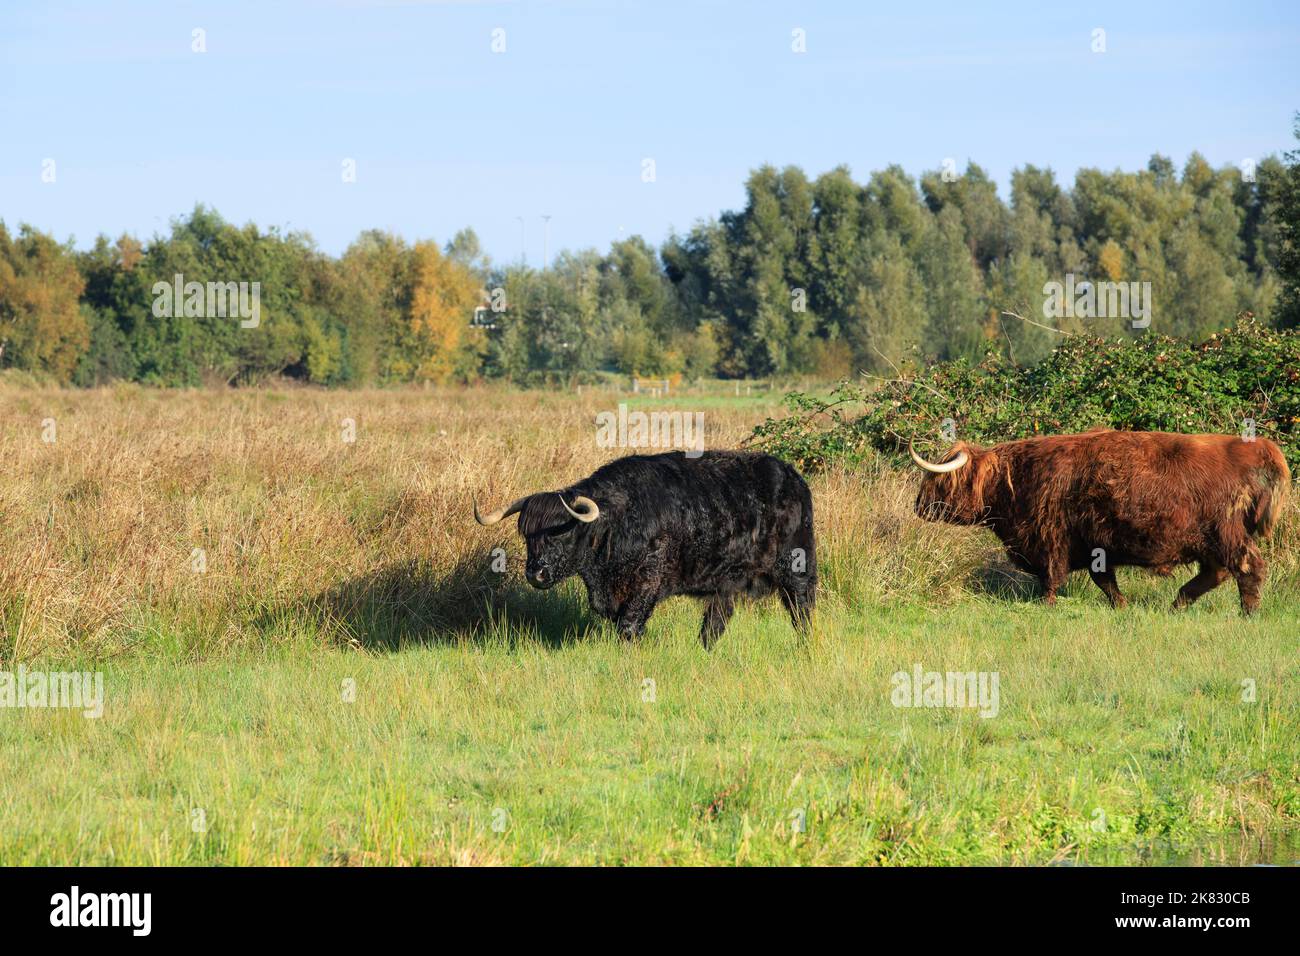 Landschaft mit weidenden schwarzen und braunen roten schottischen Highlander-Stieren mit ausgewachsenen Hörnern im Naturschutzgebiet Zaans Rietveld in den niederländischen Muni Stockfoto